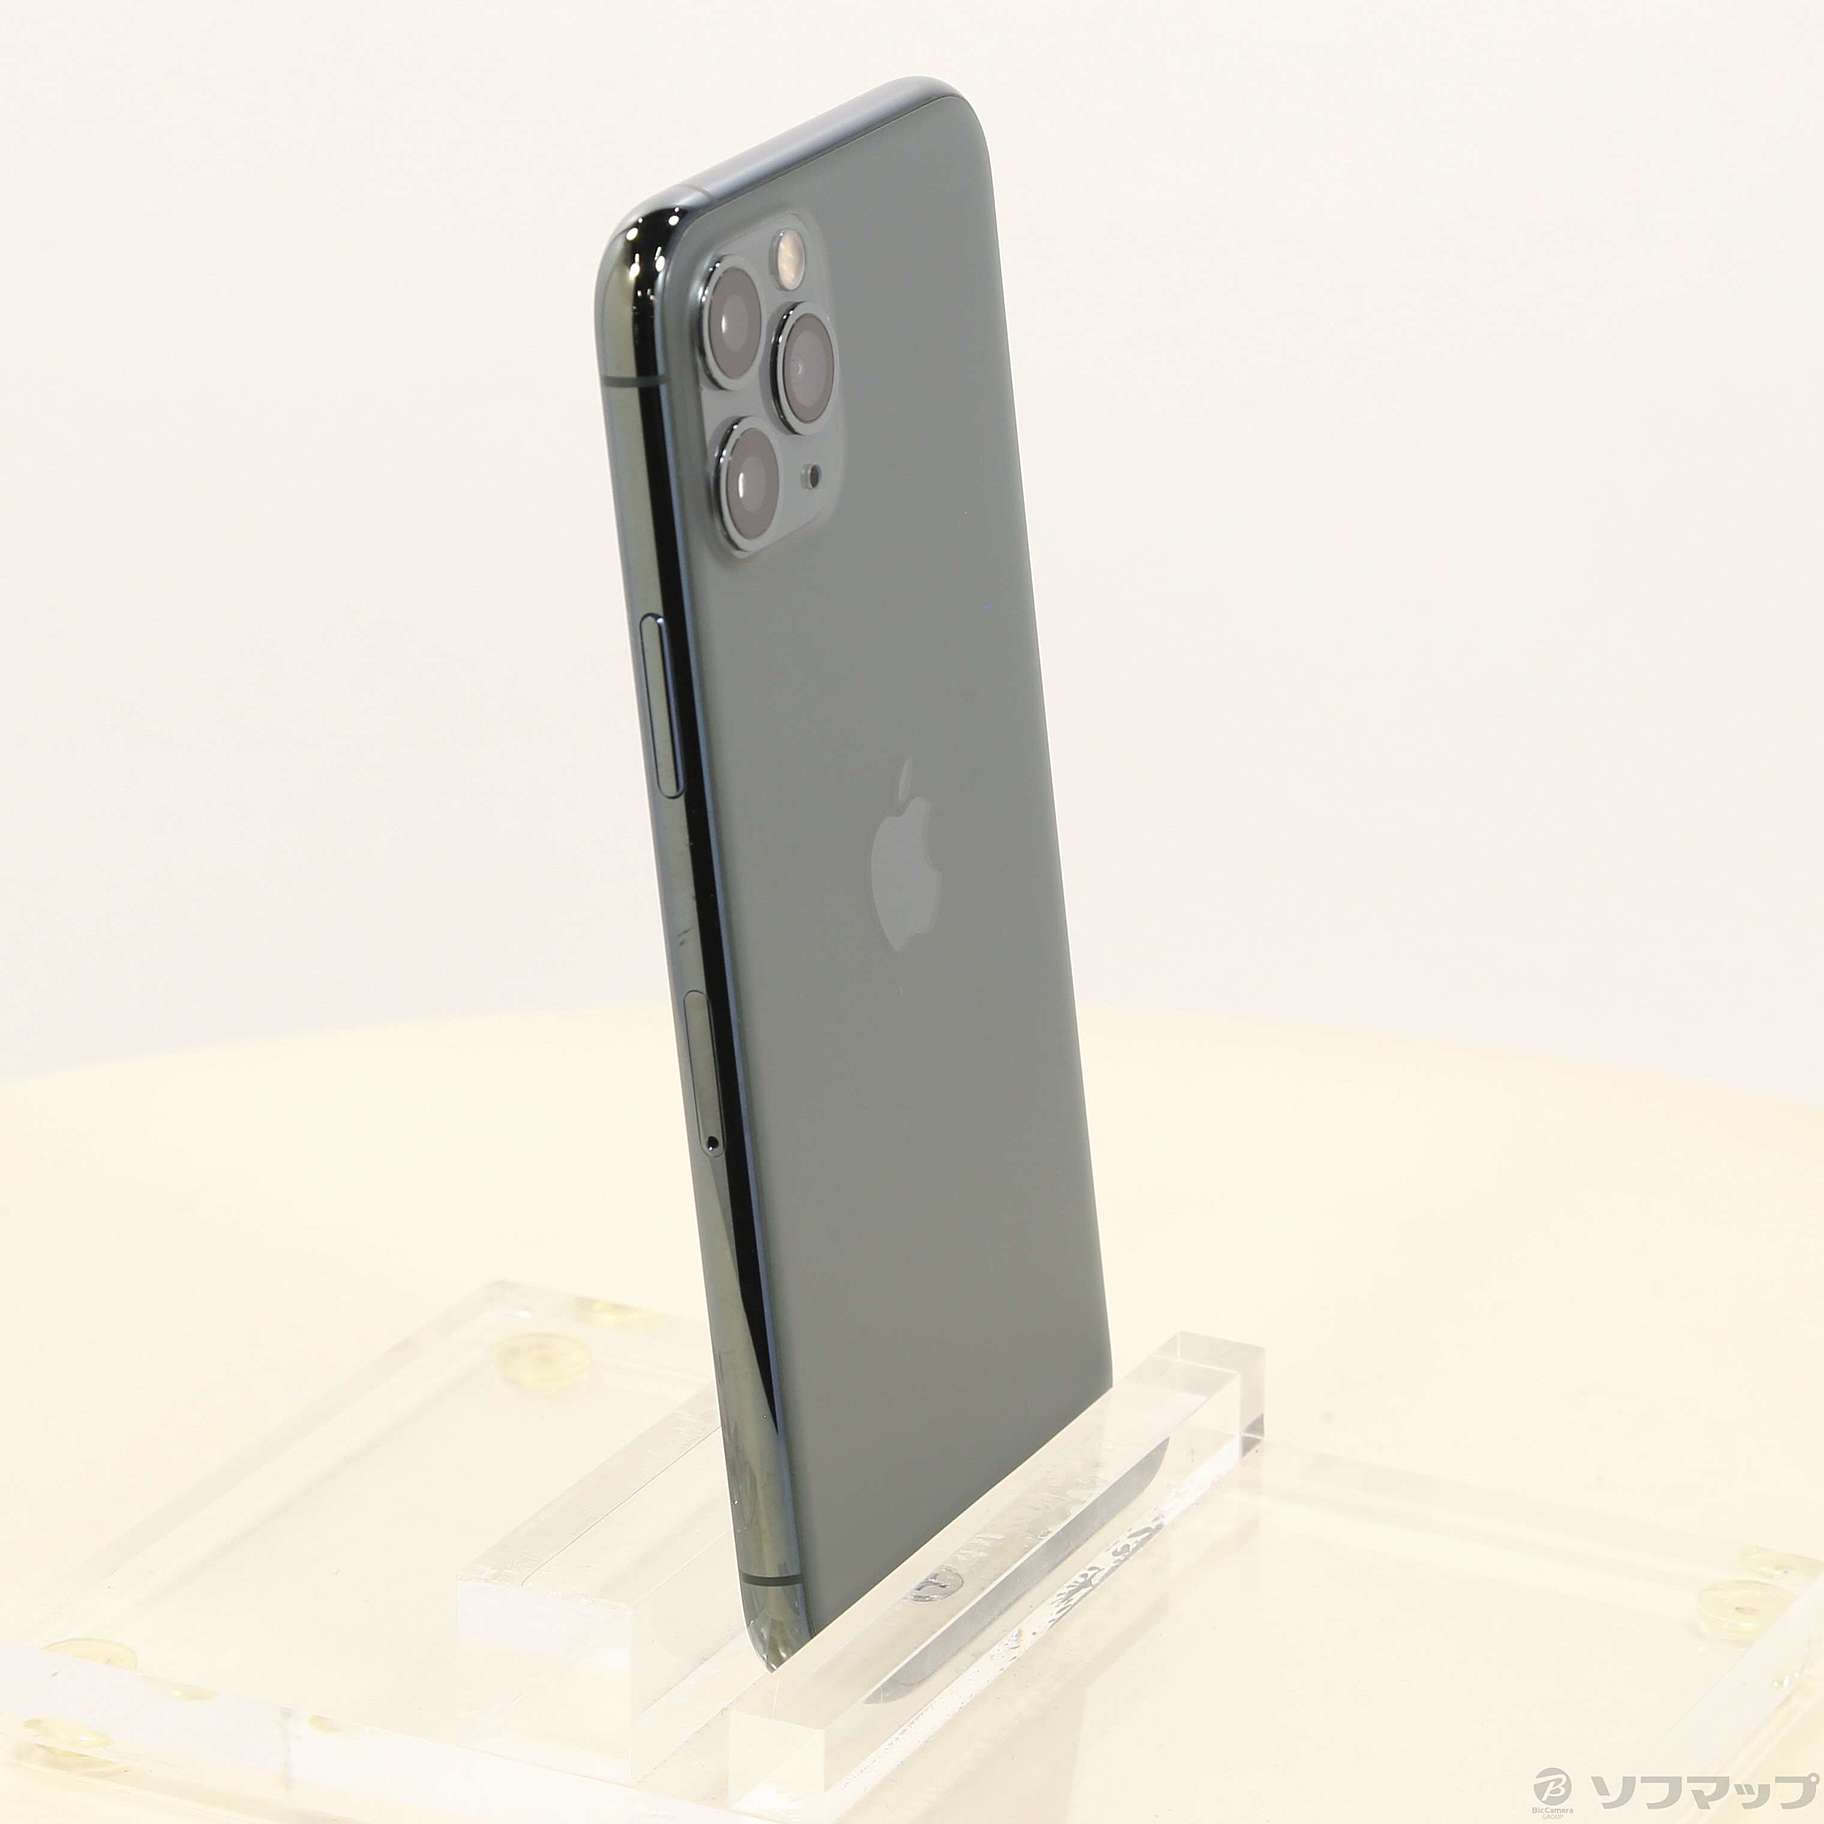 美品 MWC62J/A iPhone11pro 64gb